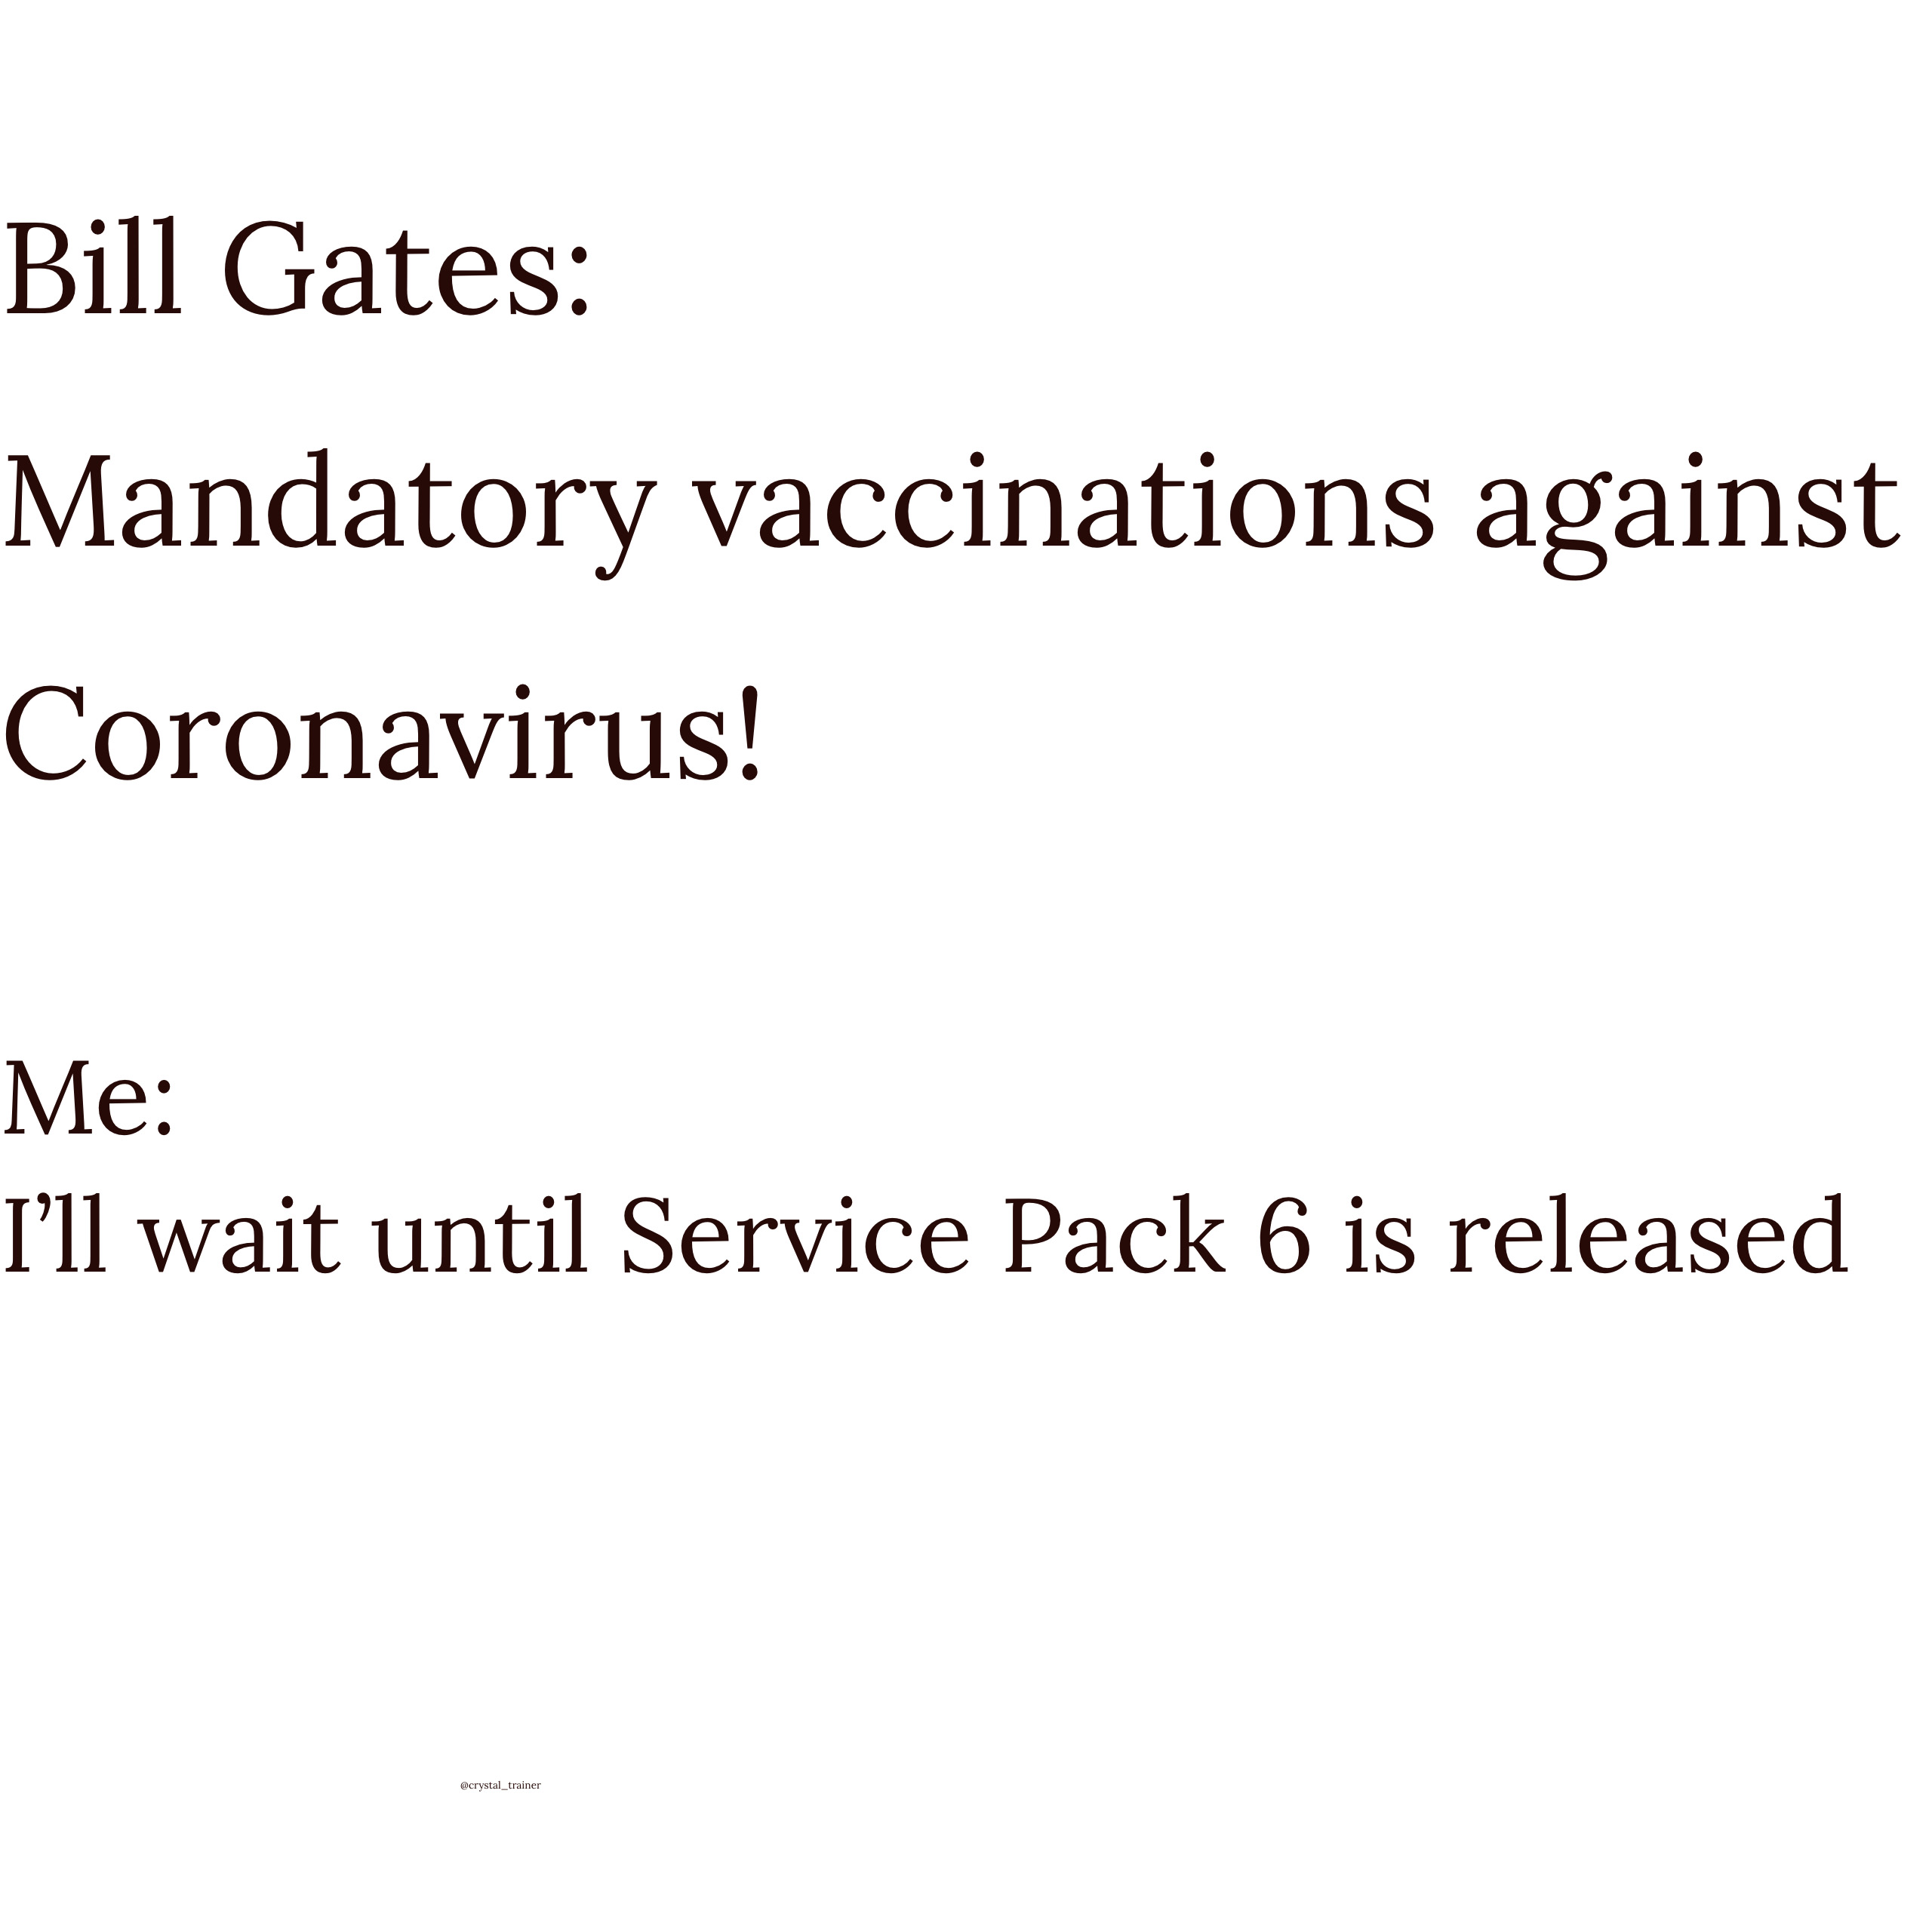 Response to Bill Gates mandatory Coronavirus Covid-19 vaccine policy